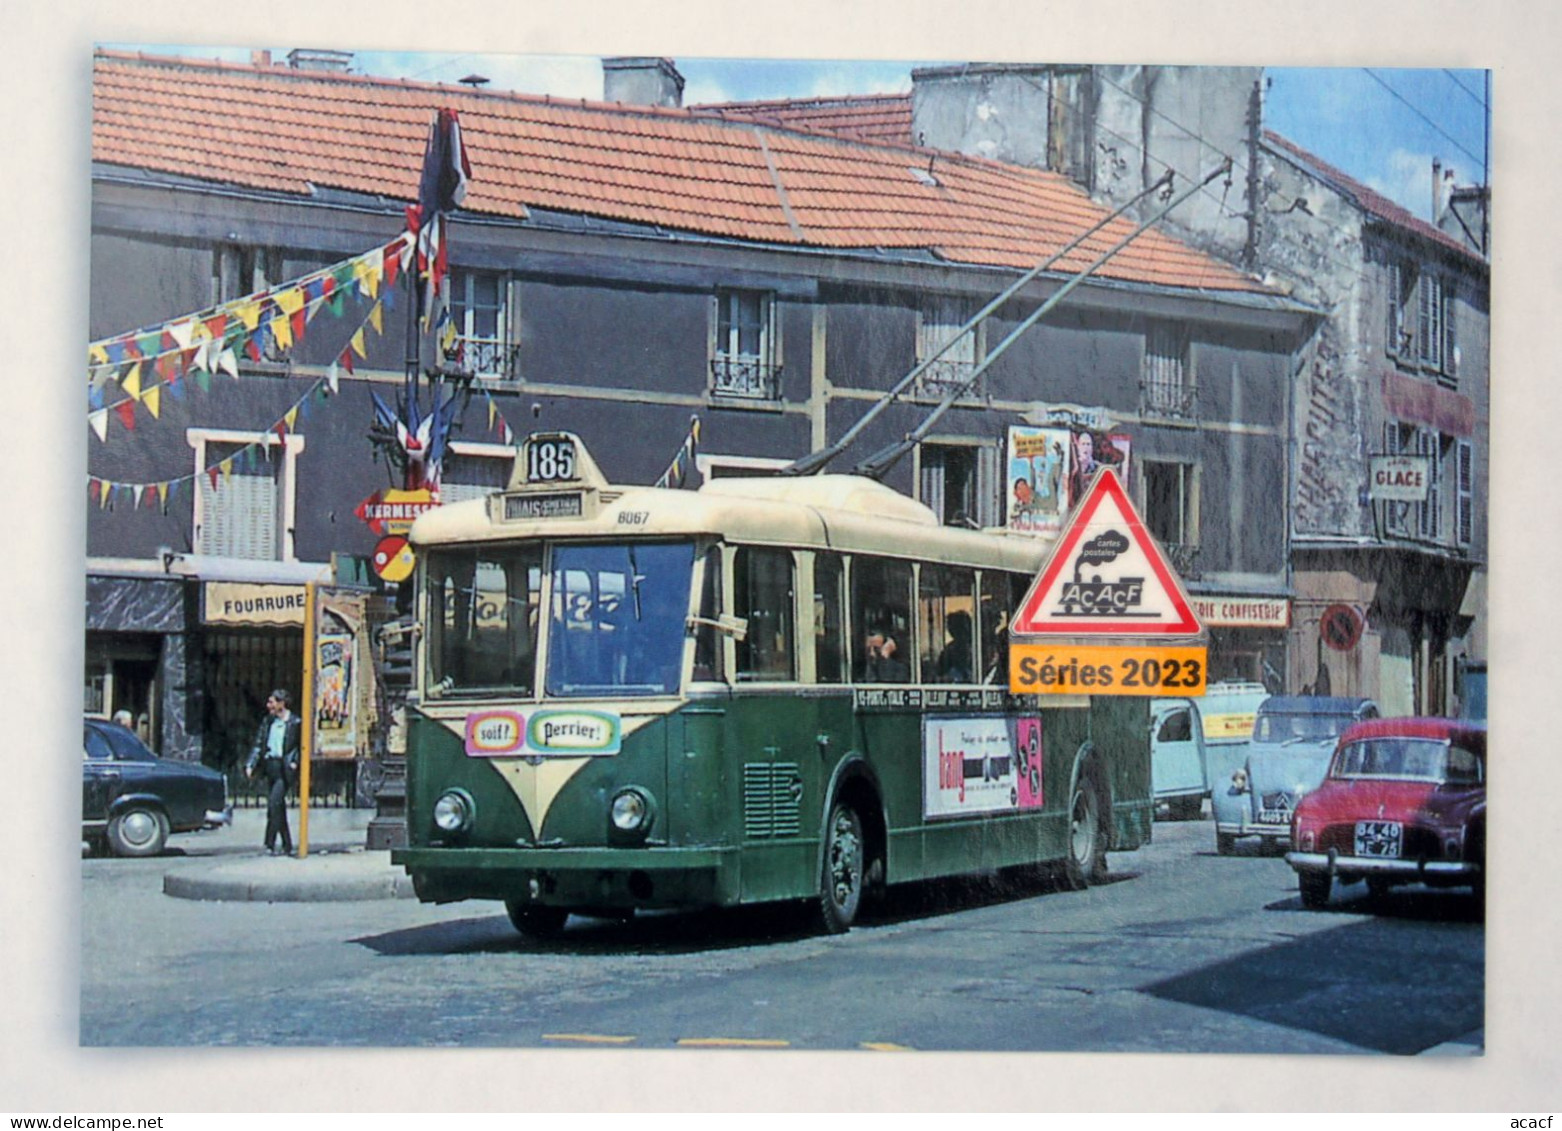 série thématique 20 CPM de trolleybus français  -